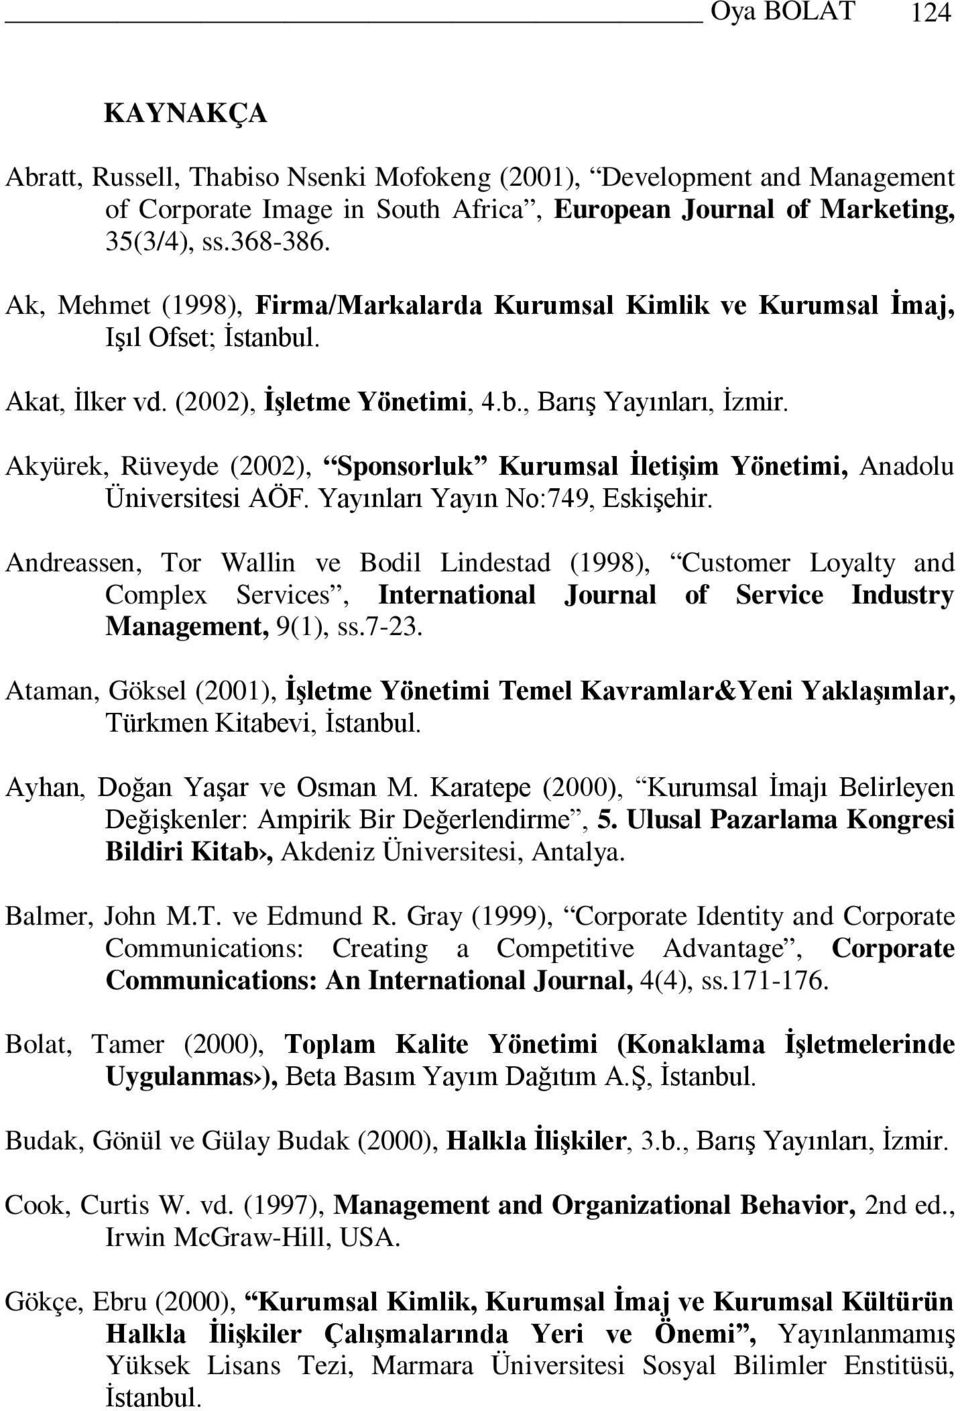 Akyürek, Rüveyde (2002), Sponsorluk Kurumsal İletişim Yönetimi, Anadolu Üniversitesi AÖF. Yayınları Yayın No:749, Eskişehir.